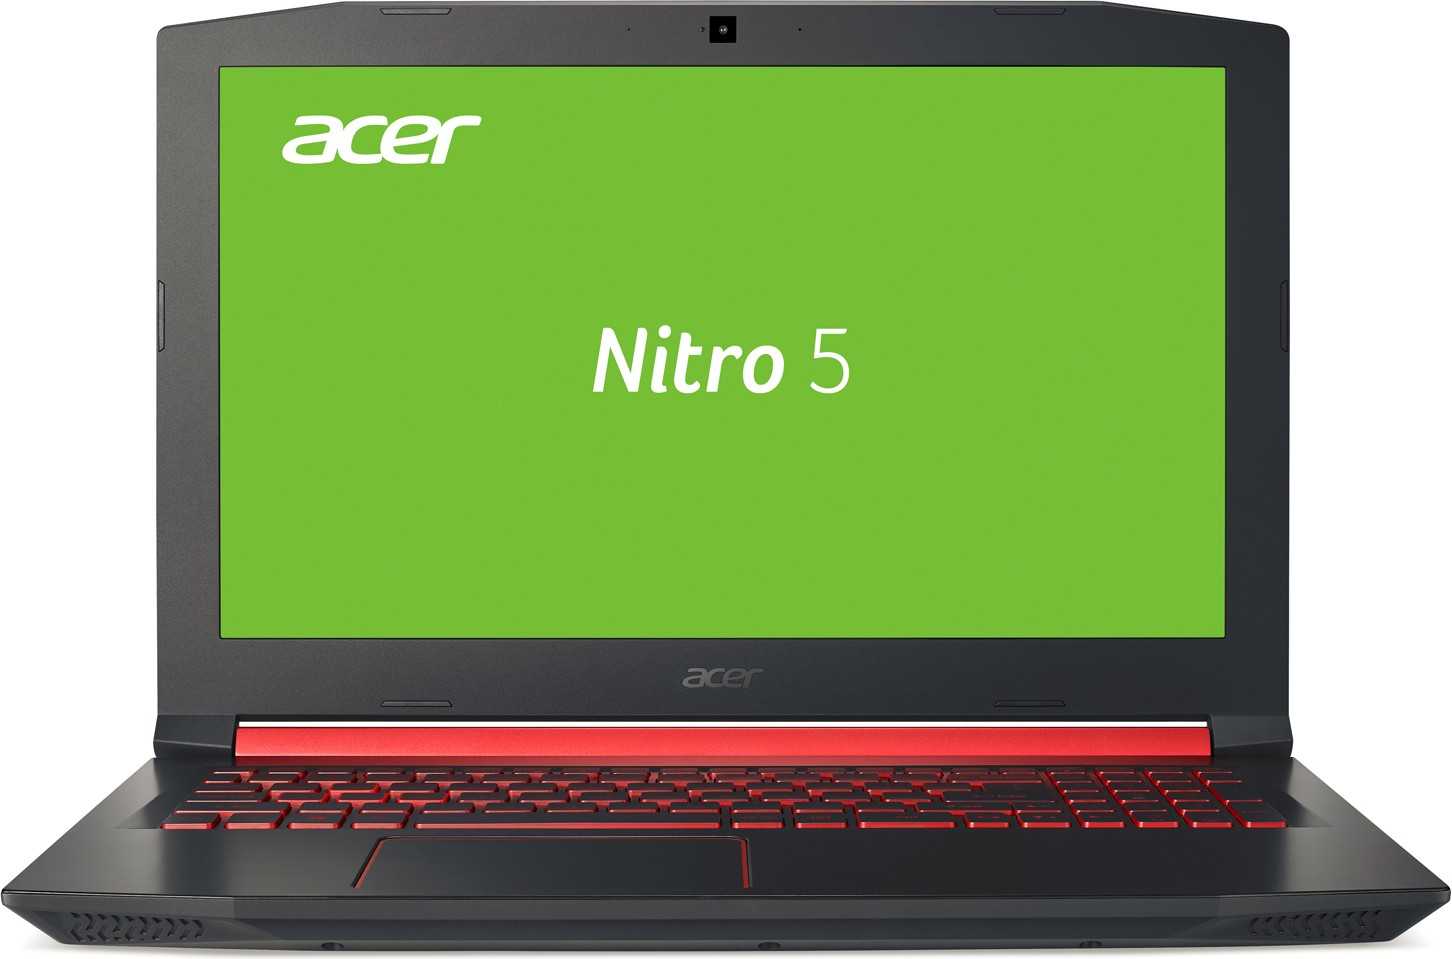 Ноутбук Acer Nitro 5 AN515-51-50H2 (NHQ2QEU002) - подробные характеристики обзоры видео фото Цены в интернет-магазинах где можно купить ноутбук Acer Nitro 5 AN515-51-50H2 (NHQ2QEU002)